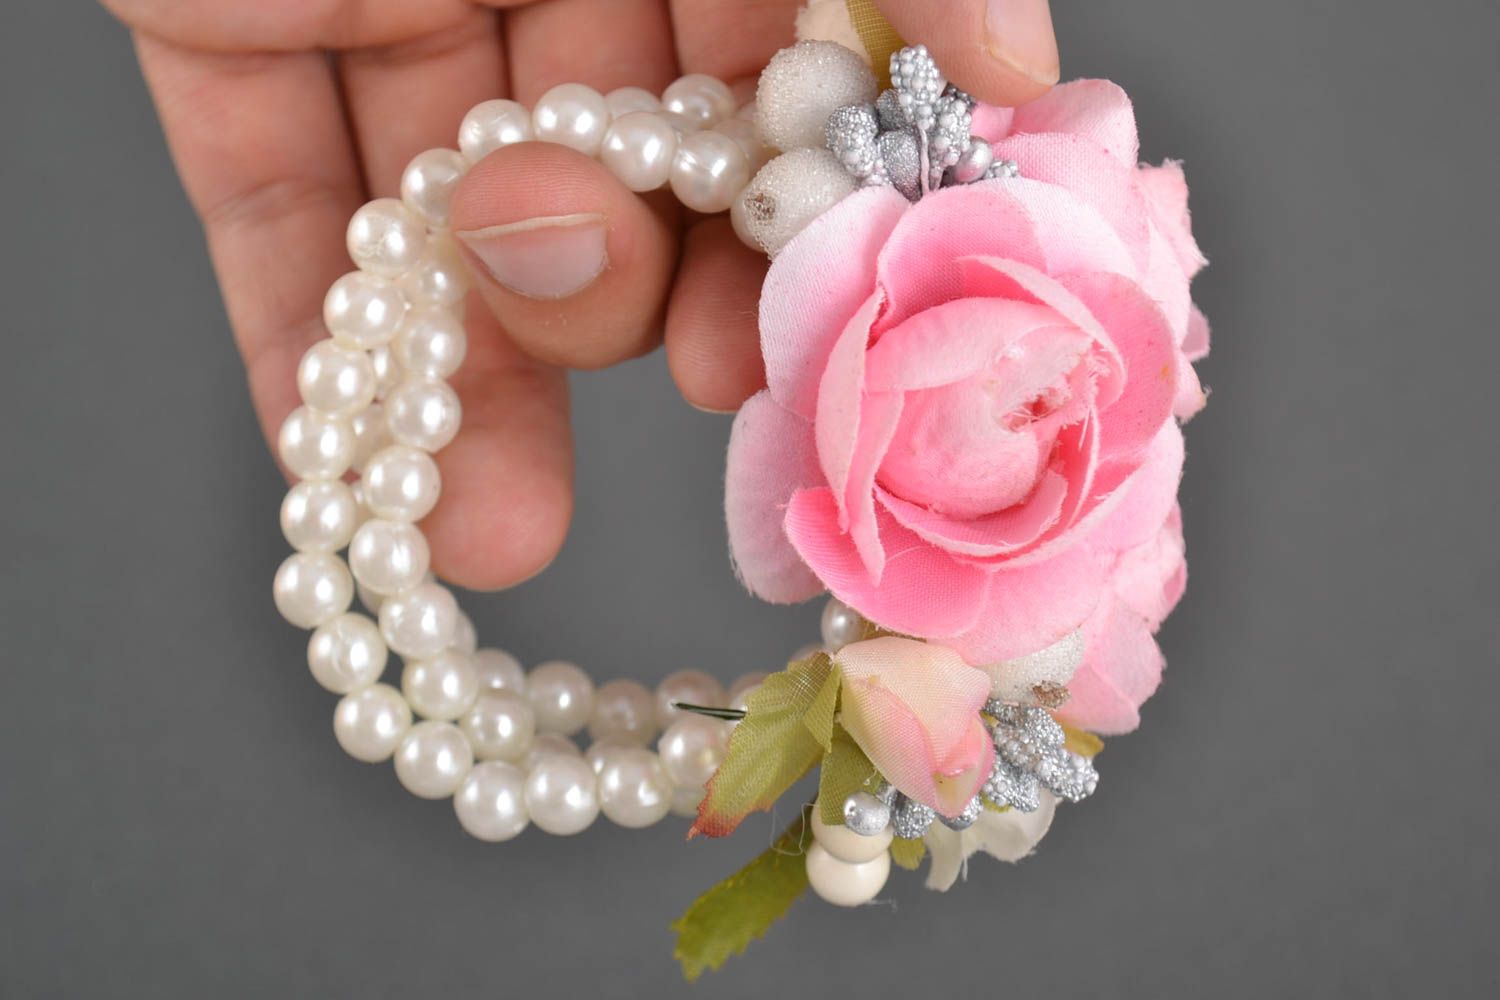 Handmade Armband Trauzeugin Blumenarmband Geschenk für Brautjungfer festlich foto 5